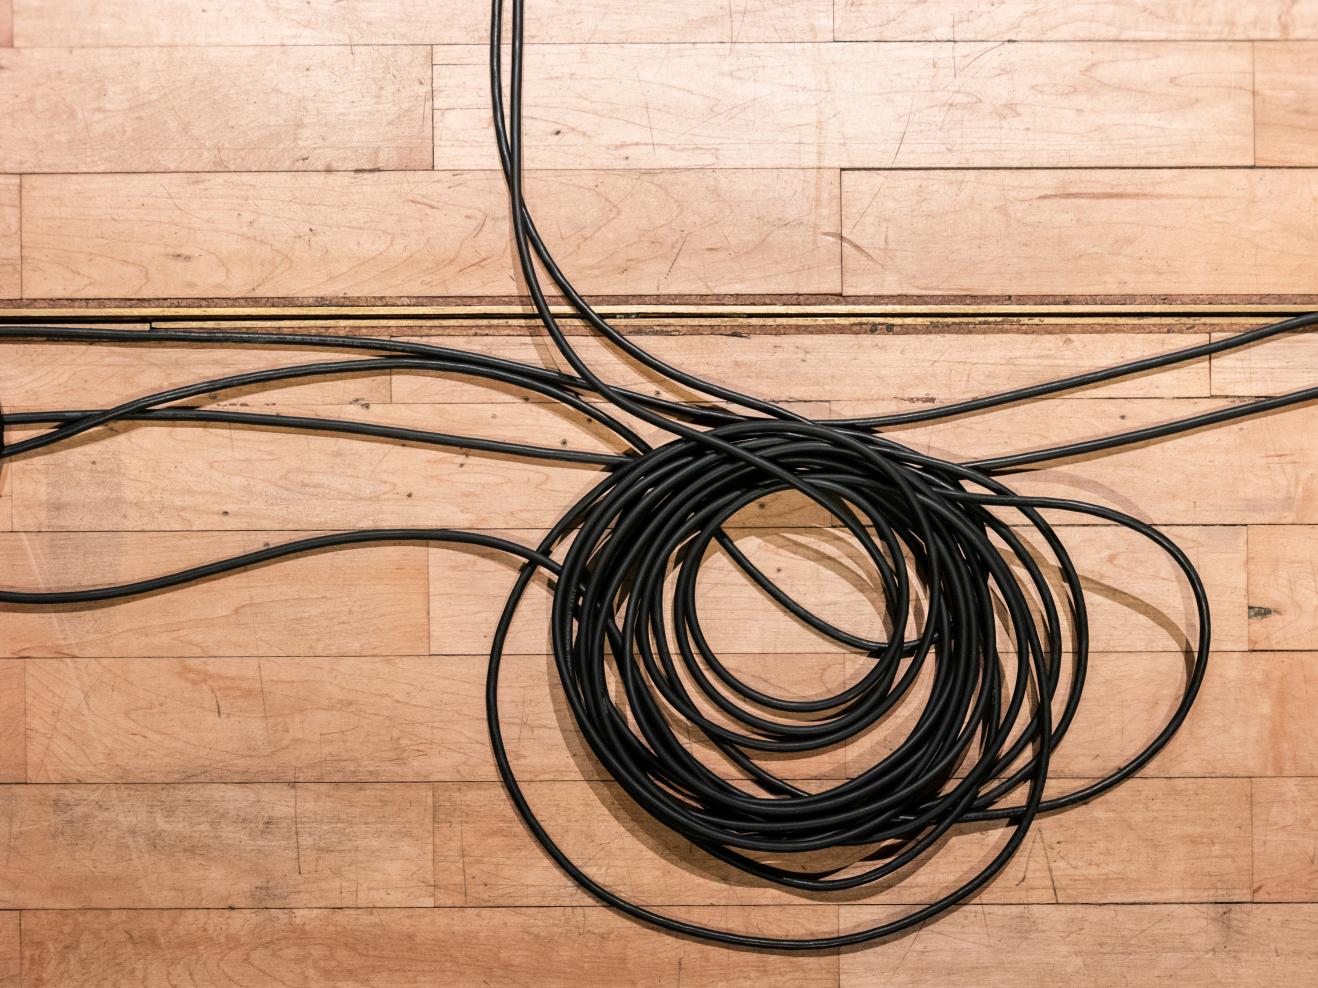 Kabel am Boden des Kleinen Saals